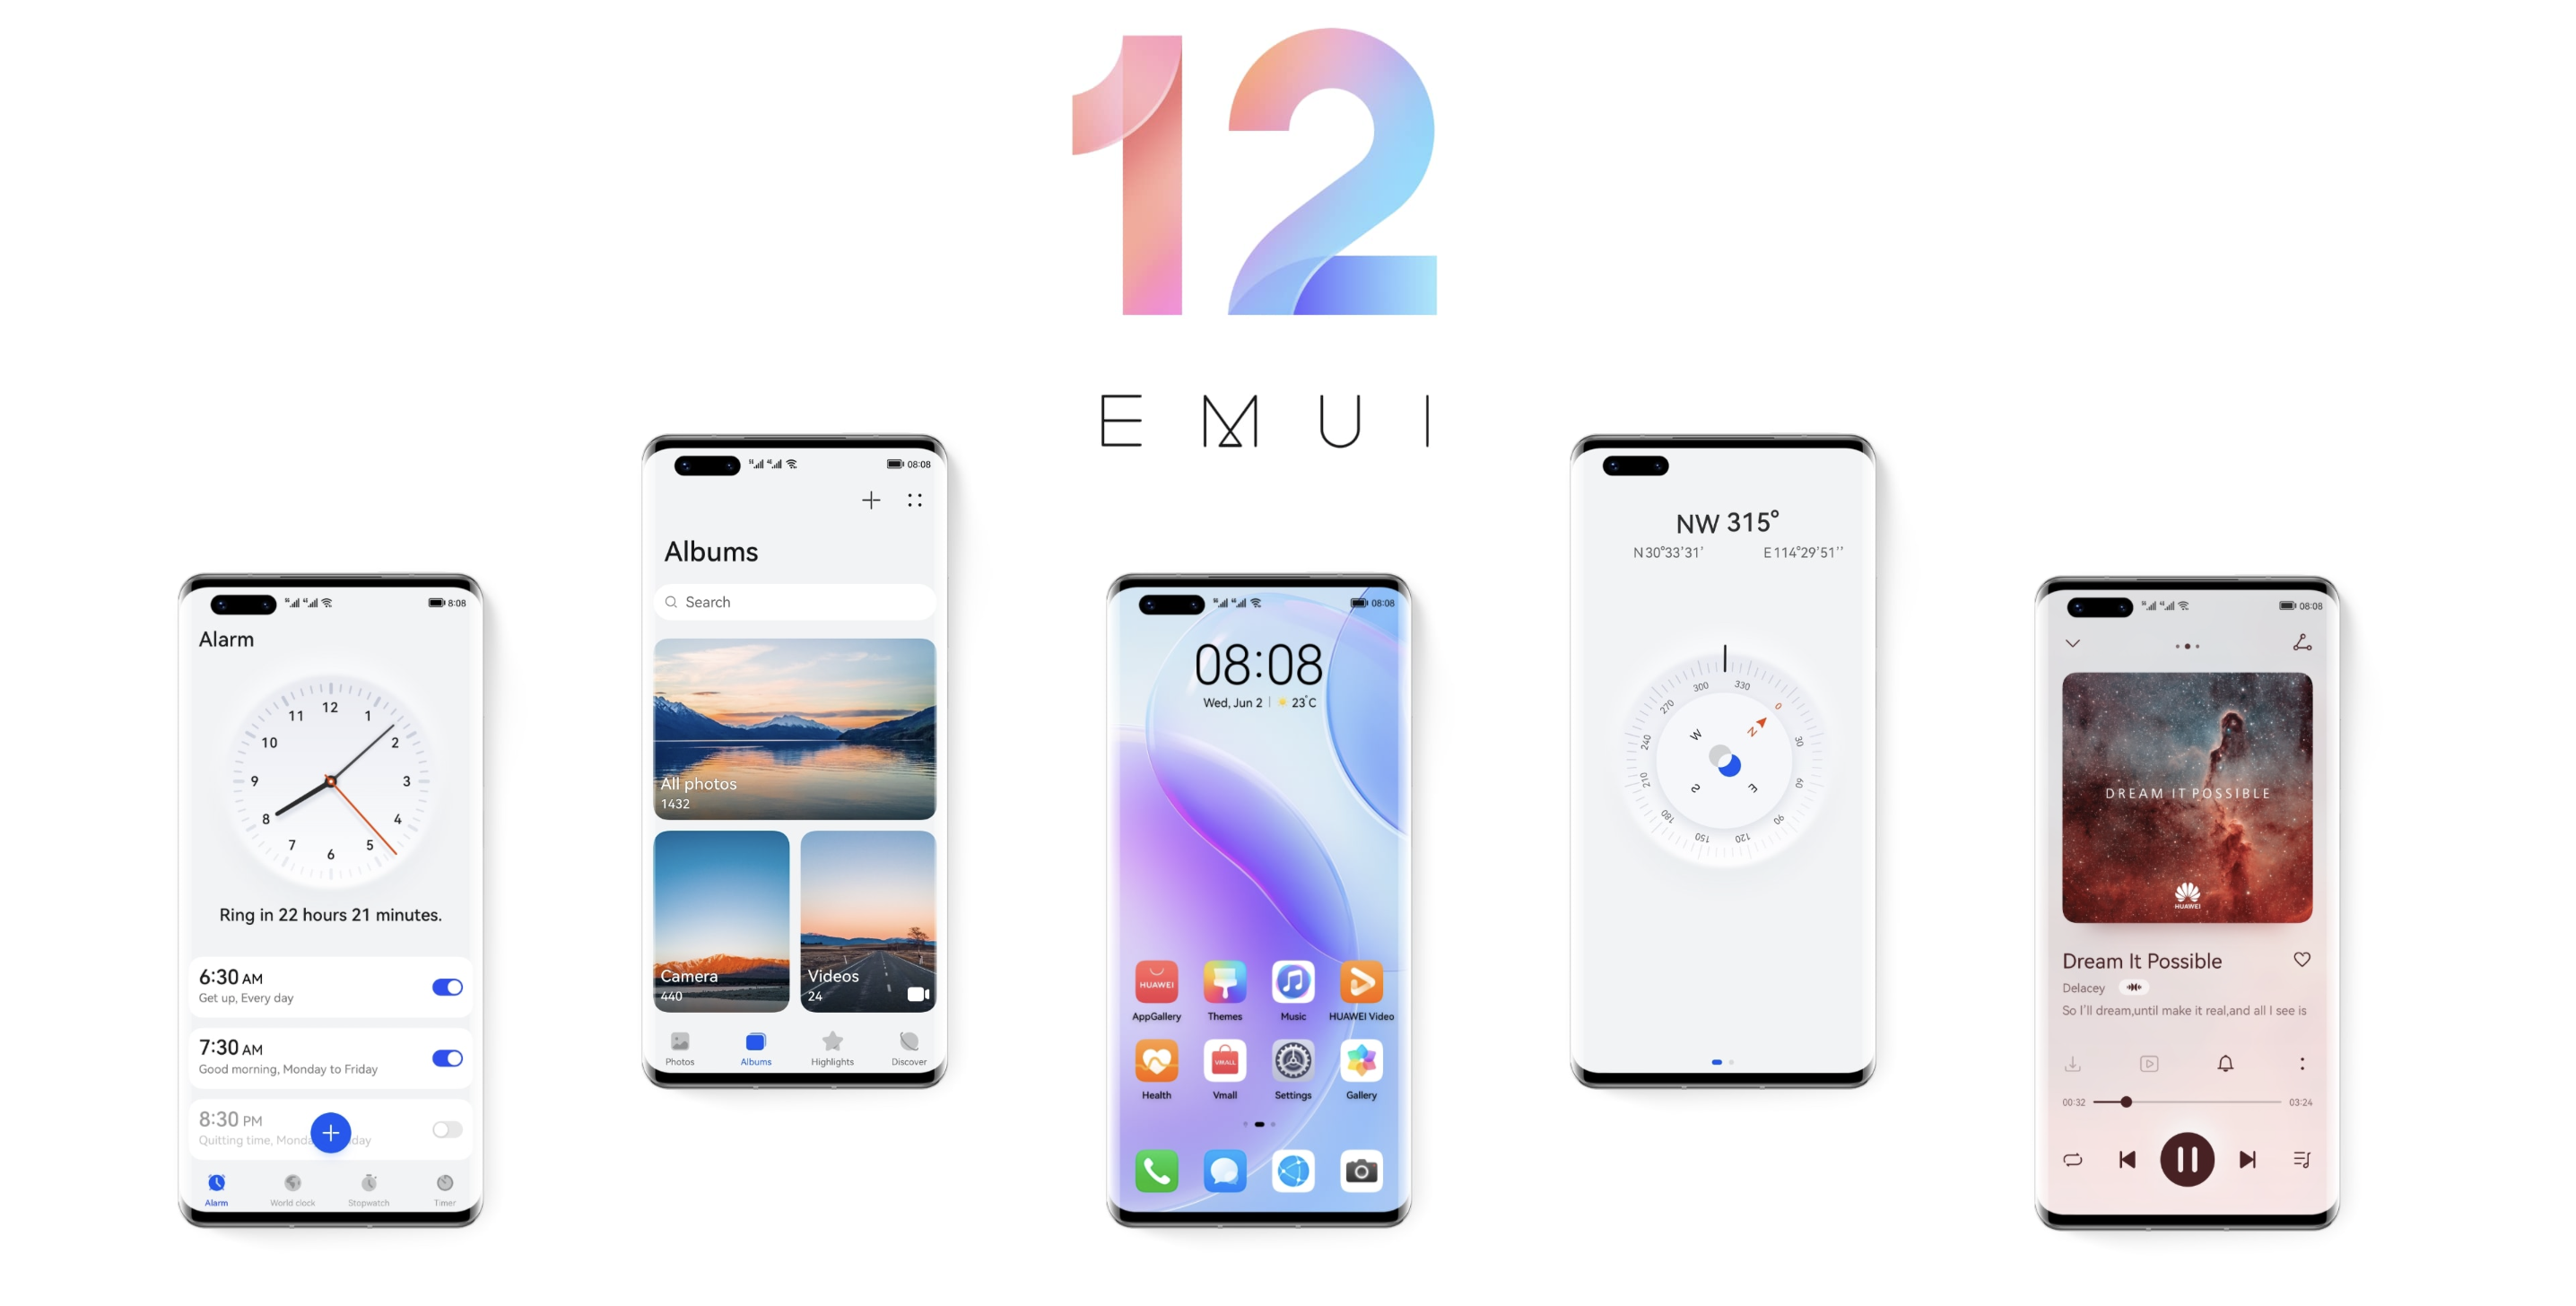 Unerwartet: Huawei enthüllt EMUI 12 mit neuen Funktionen und aktualisierter Oberfläche